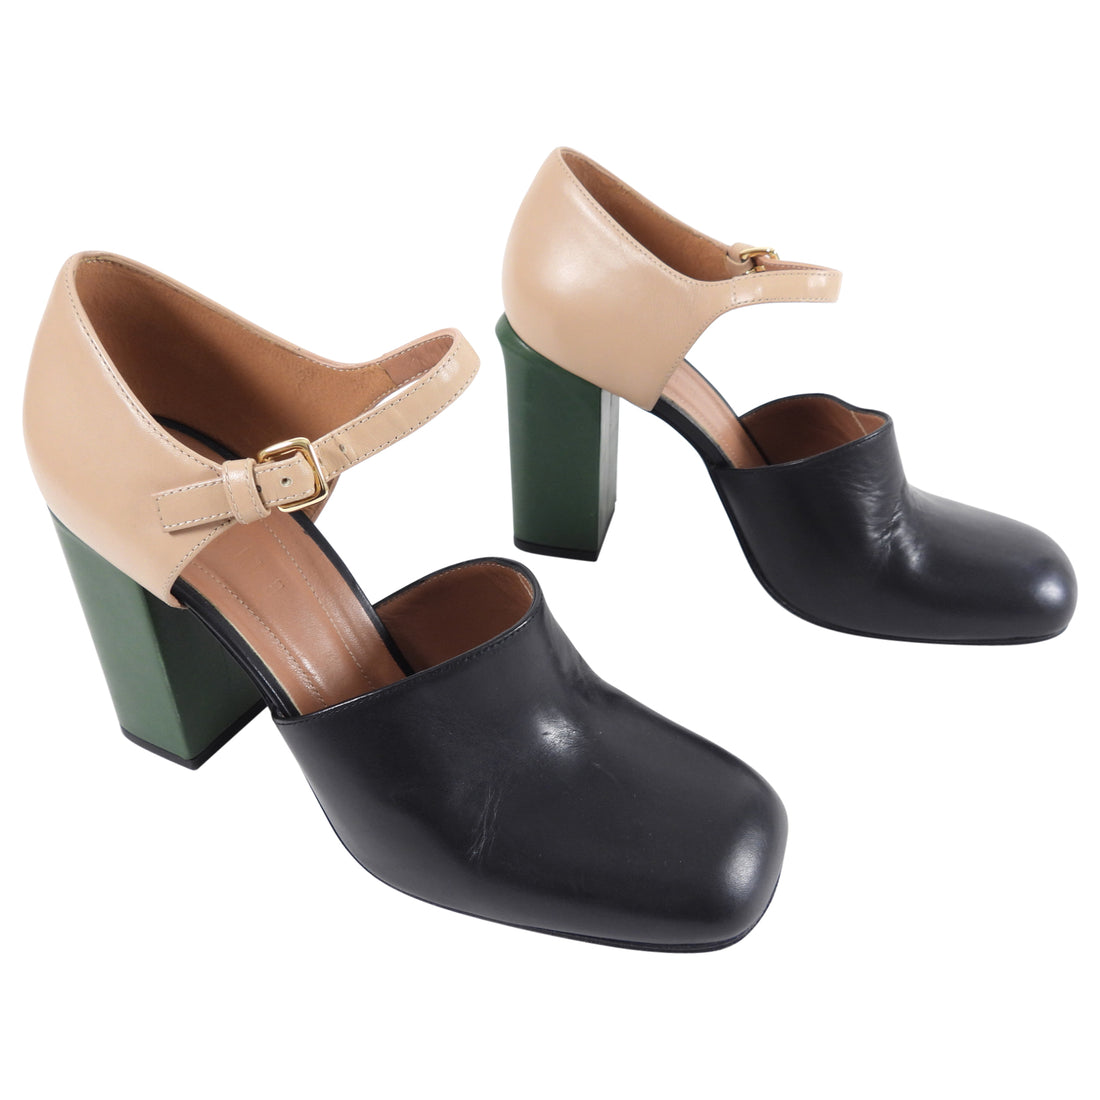 Marni Tricolor Block Heel Shoes - 39